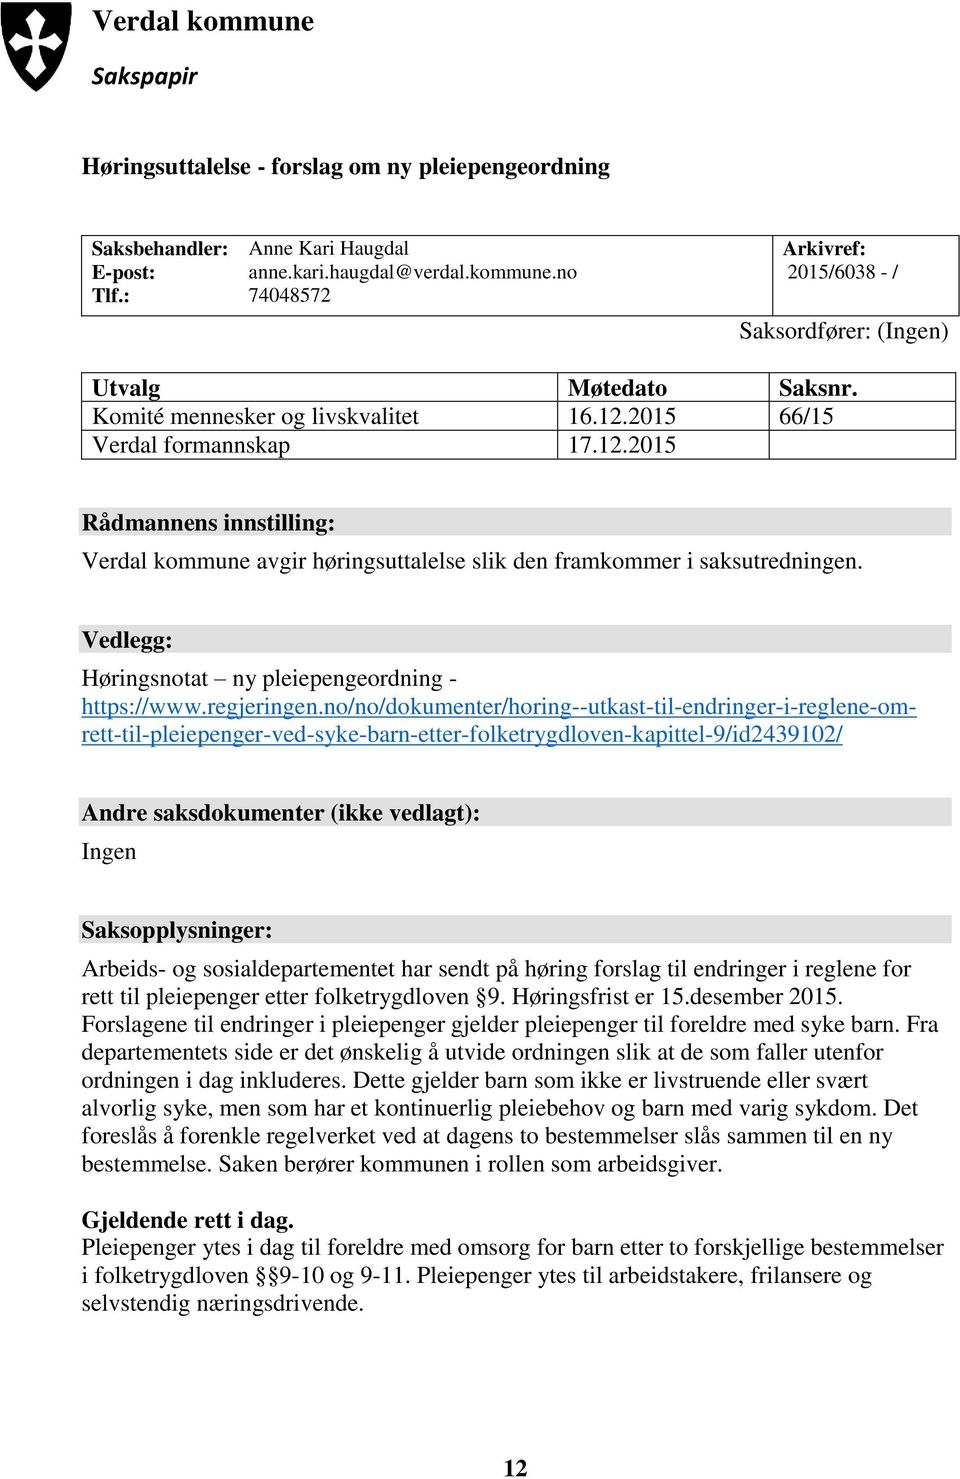 Vedlegg: Høringsnotat ny pleiepengeordning - https://www.regjeringen.